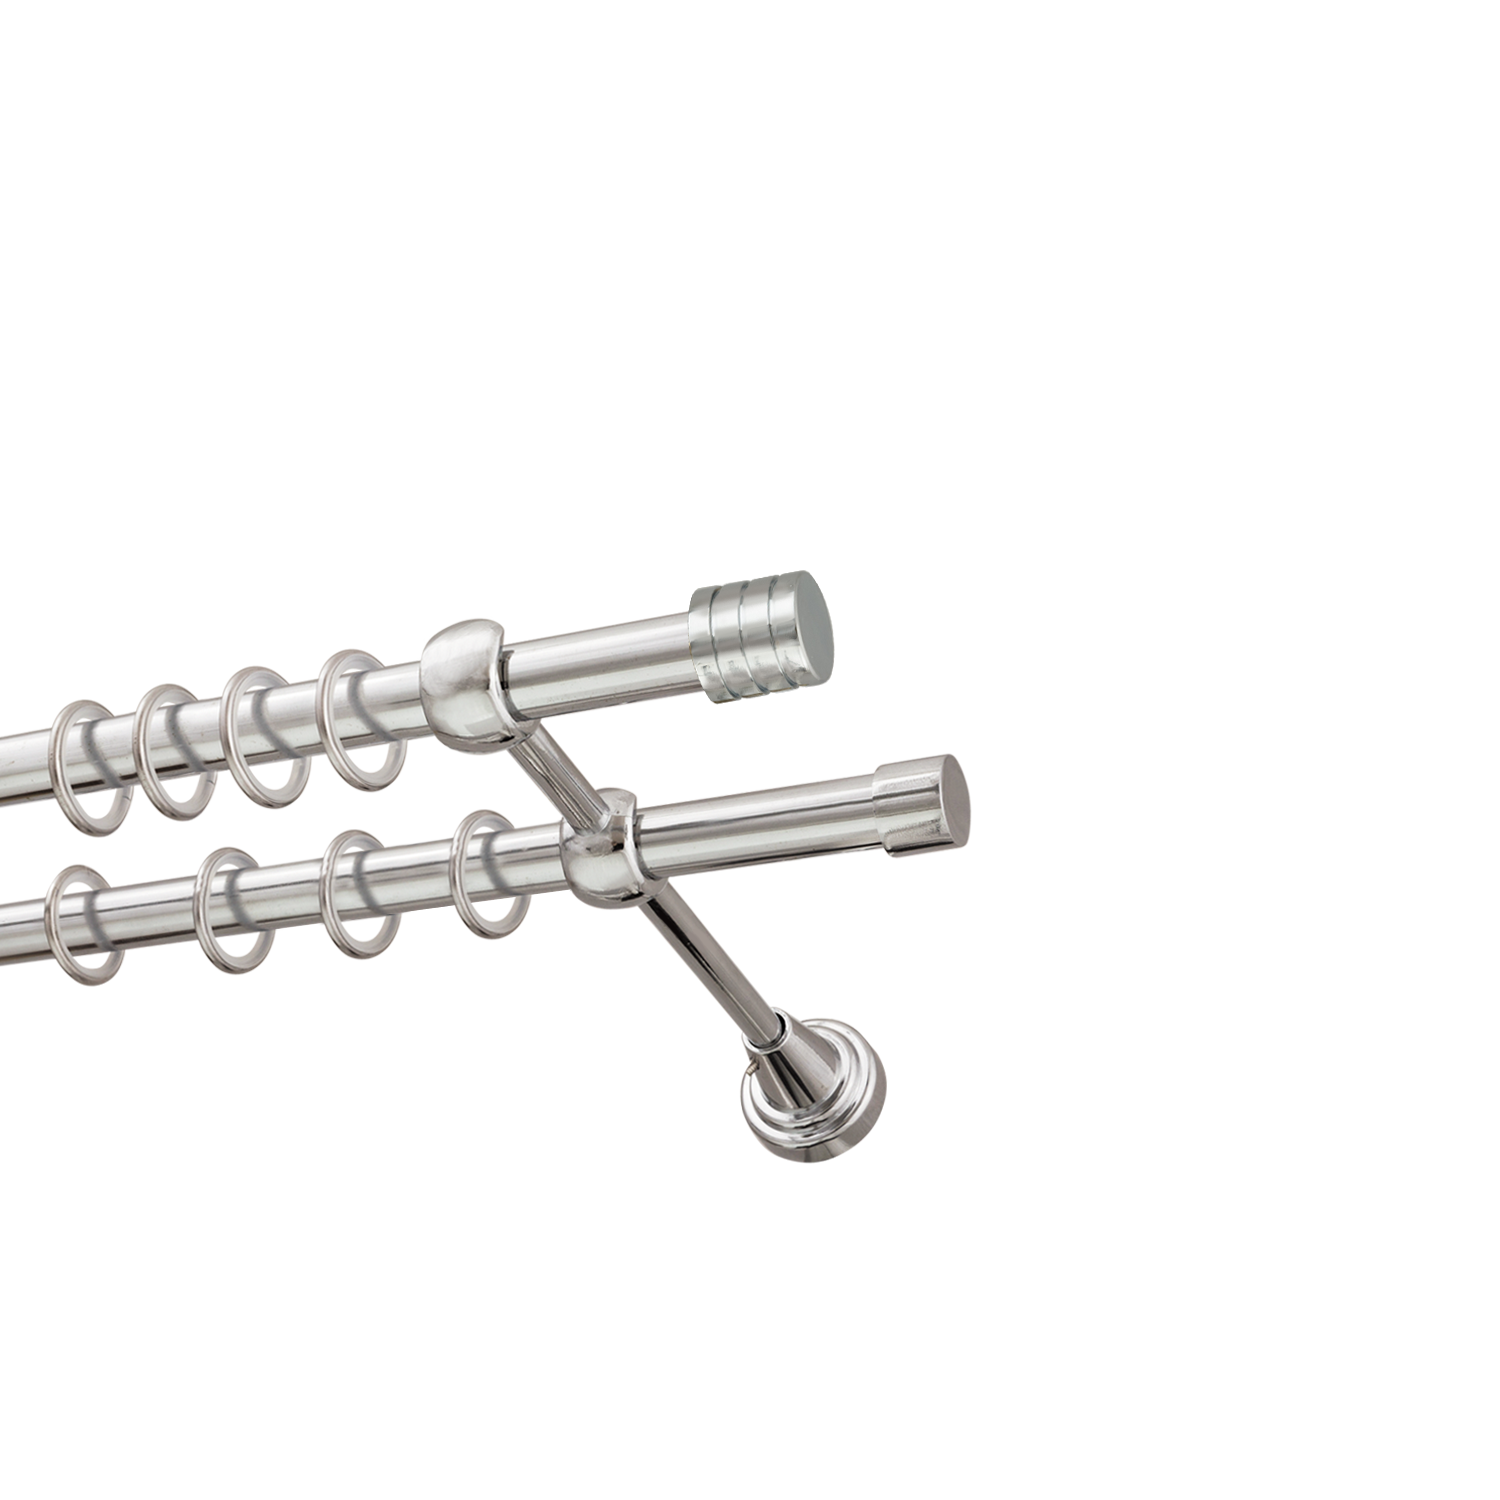 Металлический карниз для штор Подиум, двухрядный 16/16 мм, серебро, гладкая штанга, длина 300 см - фото Wikidecor.ru